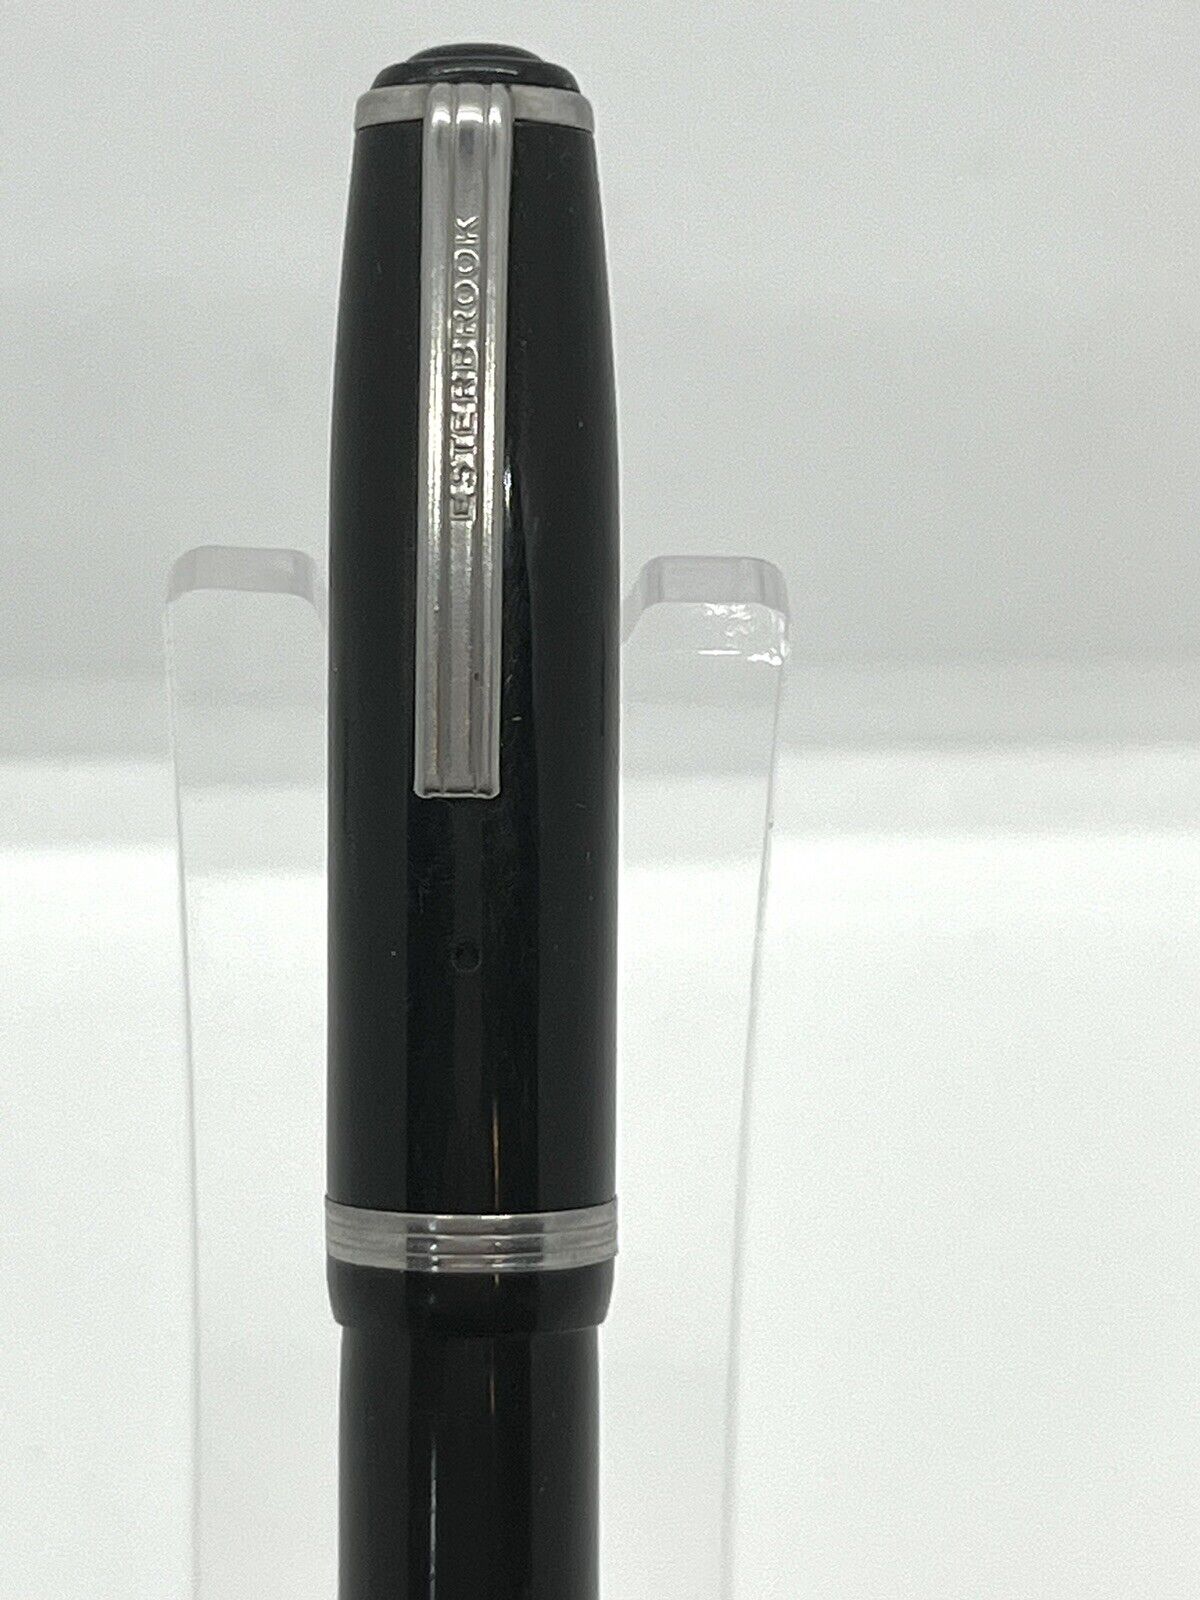 Vintage Esterbrook J Fountain Pen, Black, Double Jewel, 1550 Nib